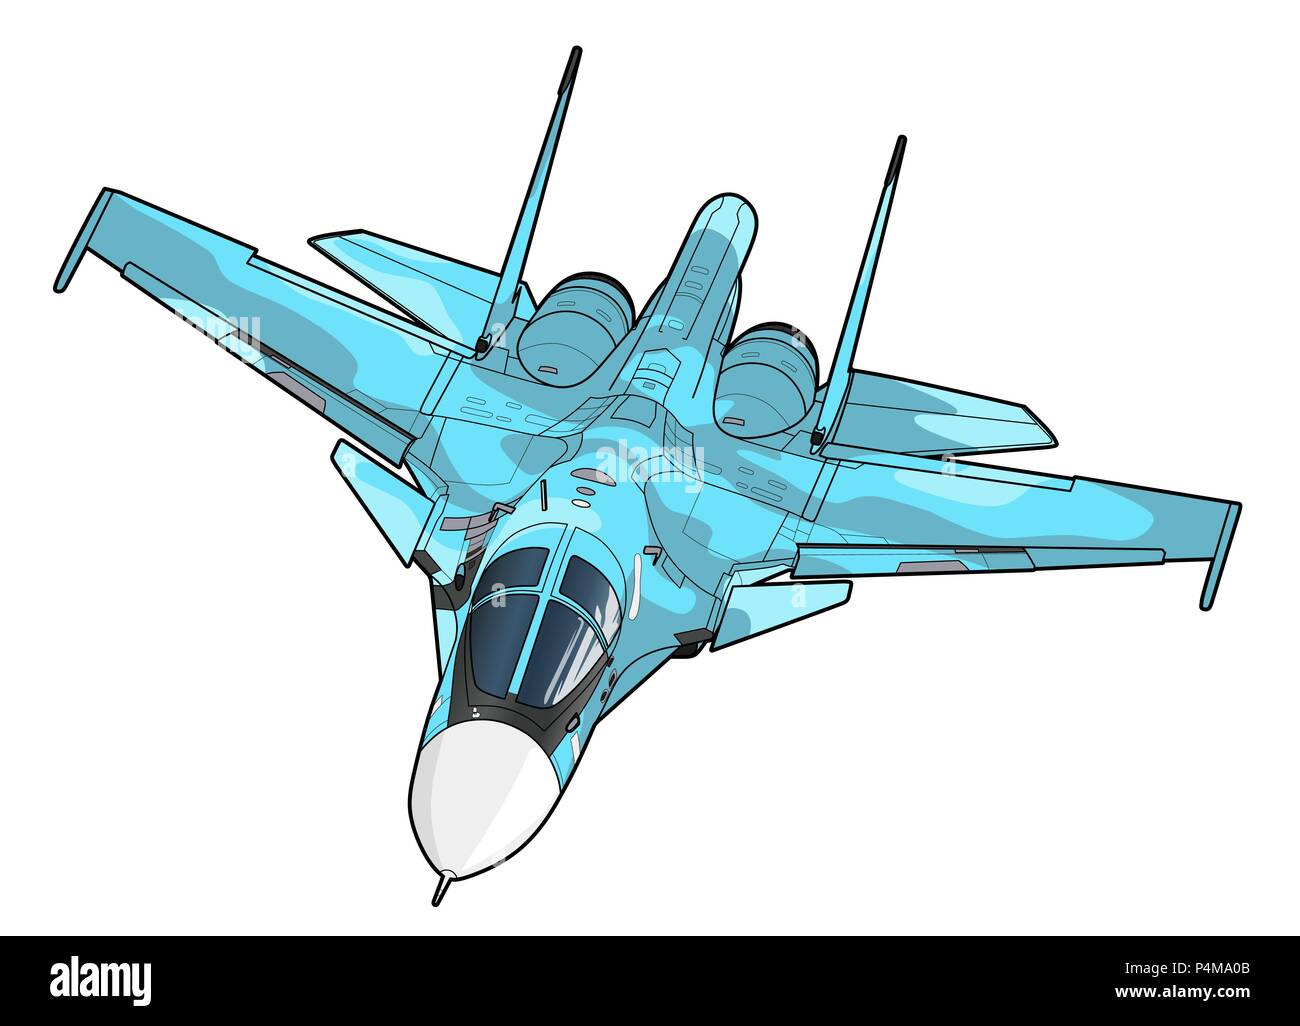 Landung der neuesten russischen Jet Bomber Aircraft. Technisches Zeichnen.  Auf weissem Hintergrund Stock-Vektorgrafik - Alamy